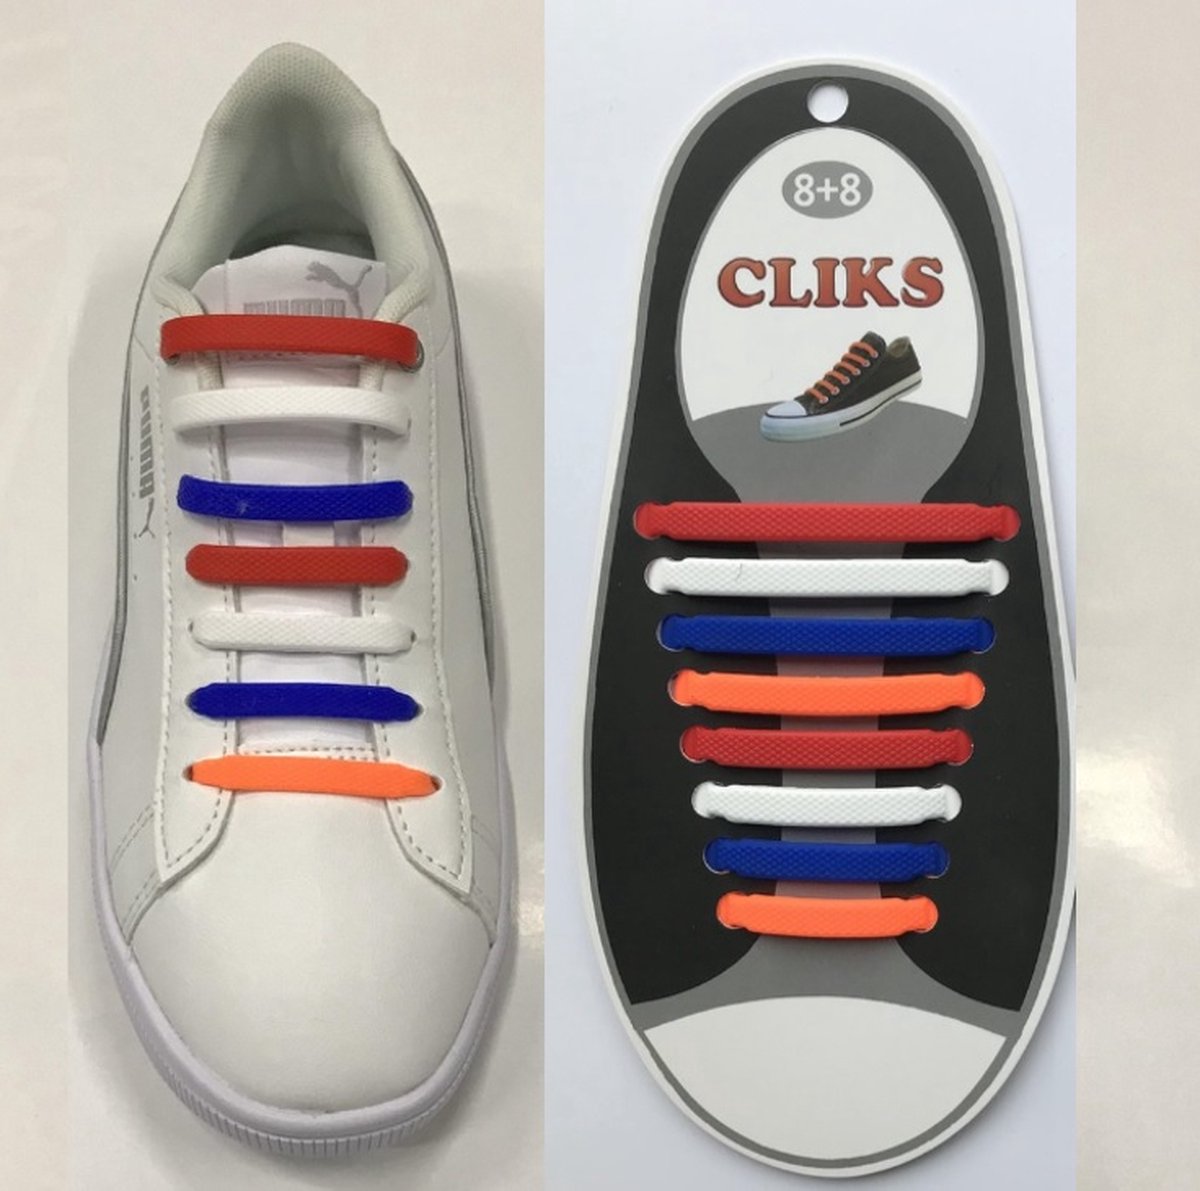 CLIKS elastische veters - Holland kleuren - siliconen veters - kids - volwassenen